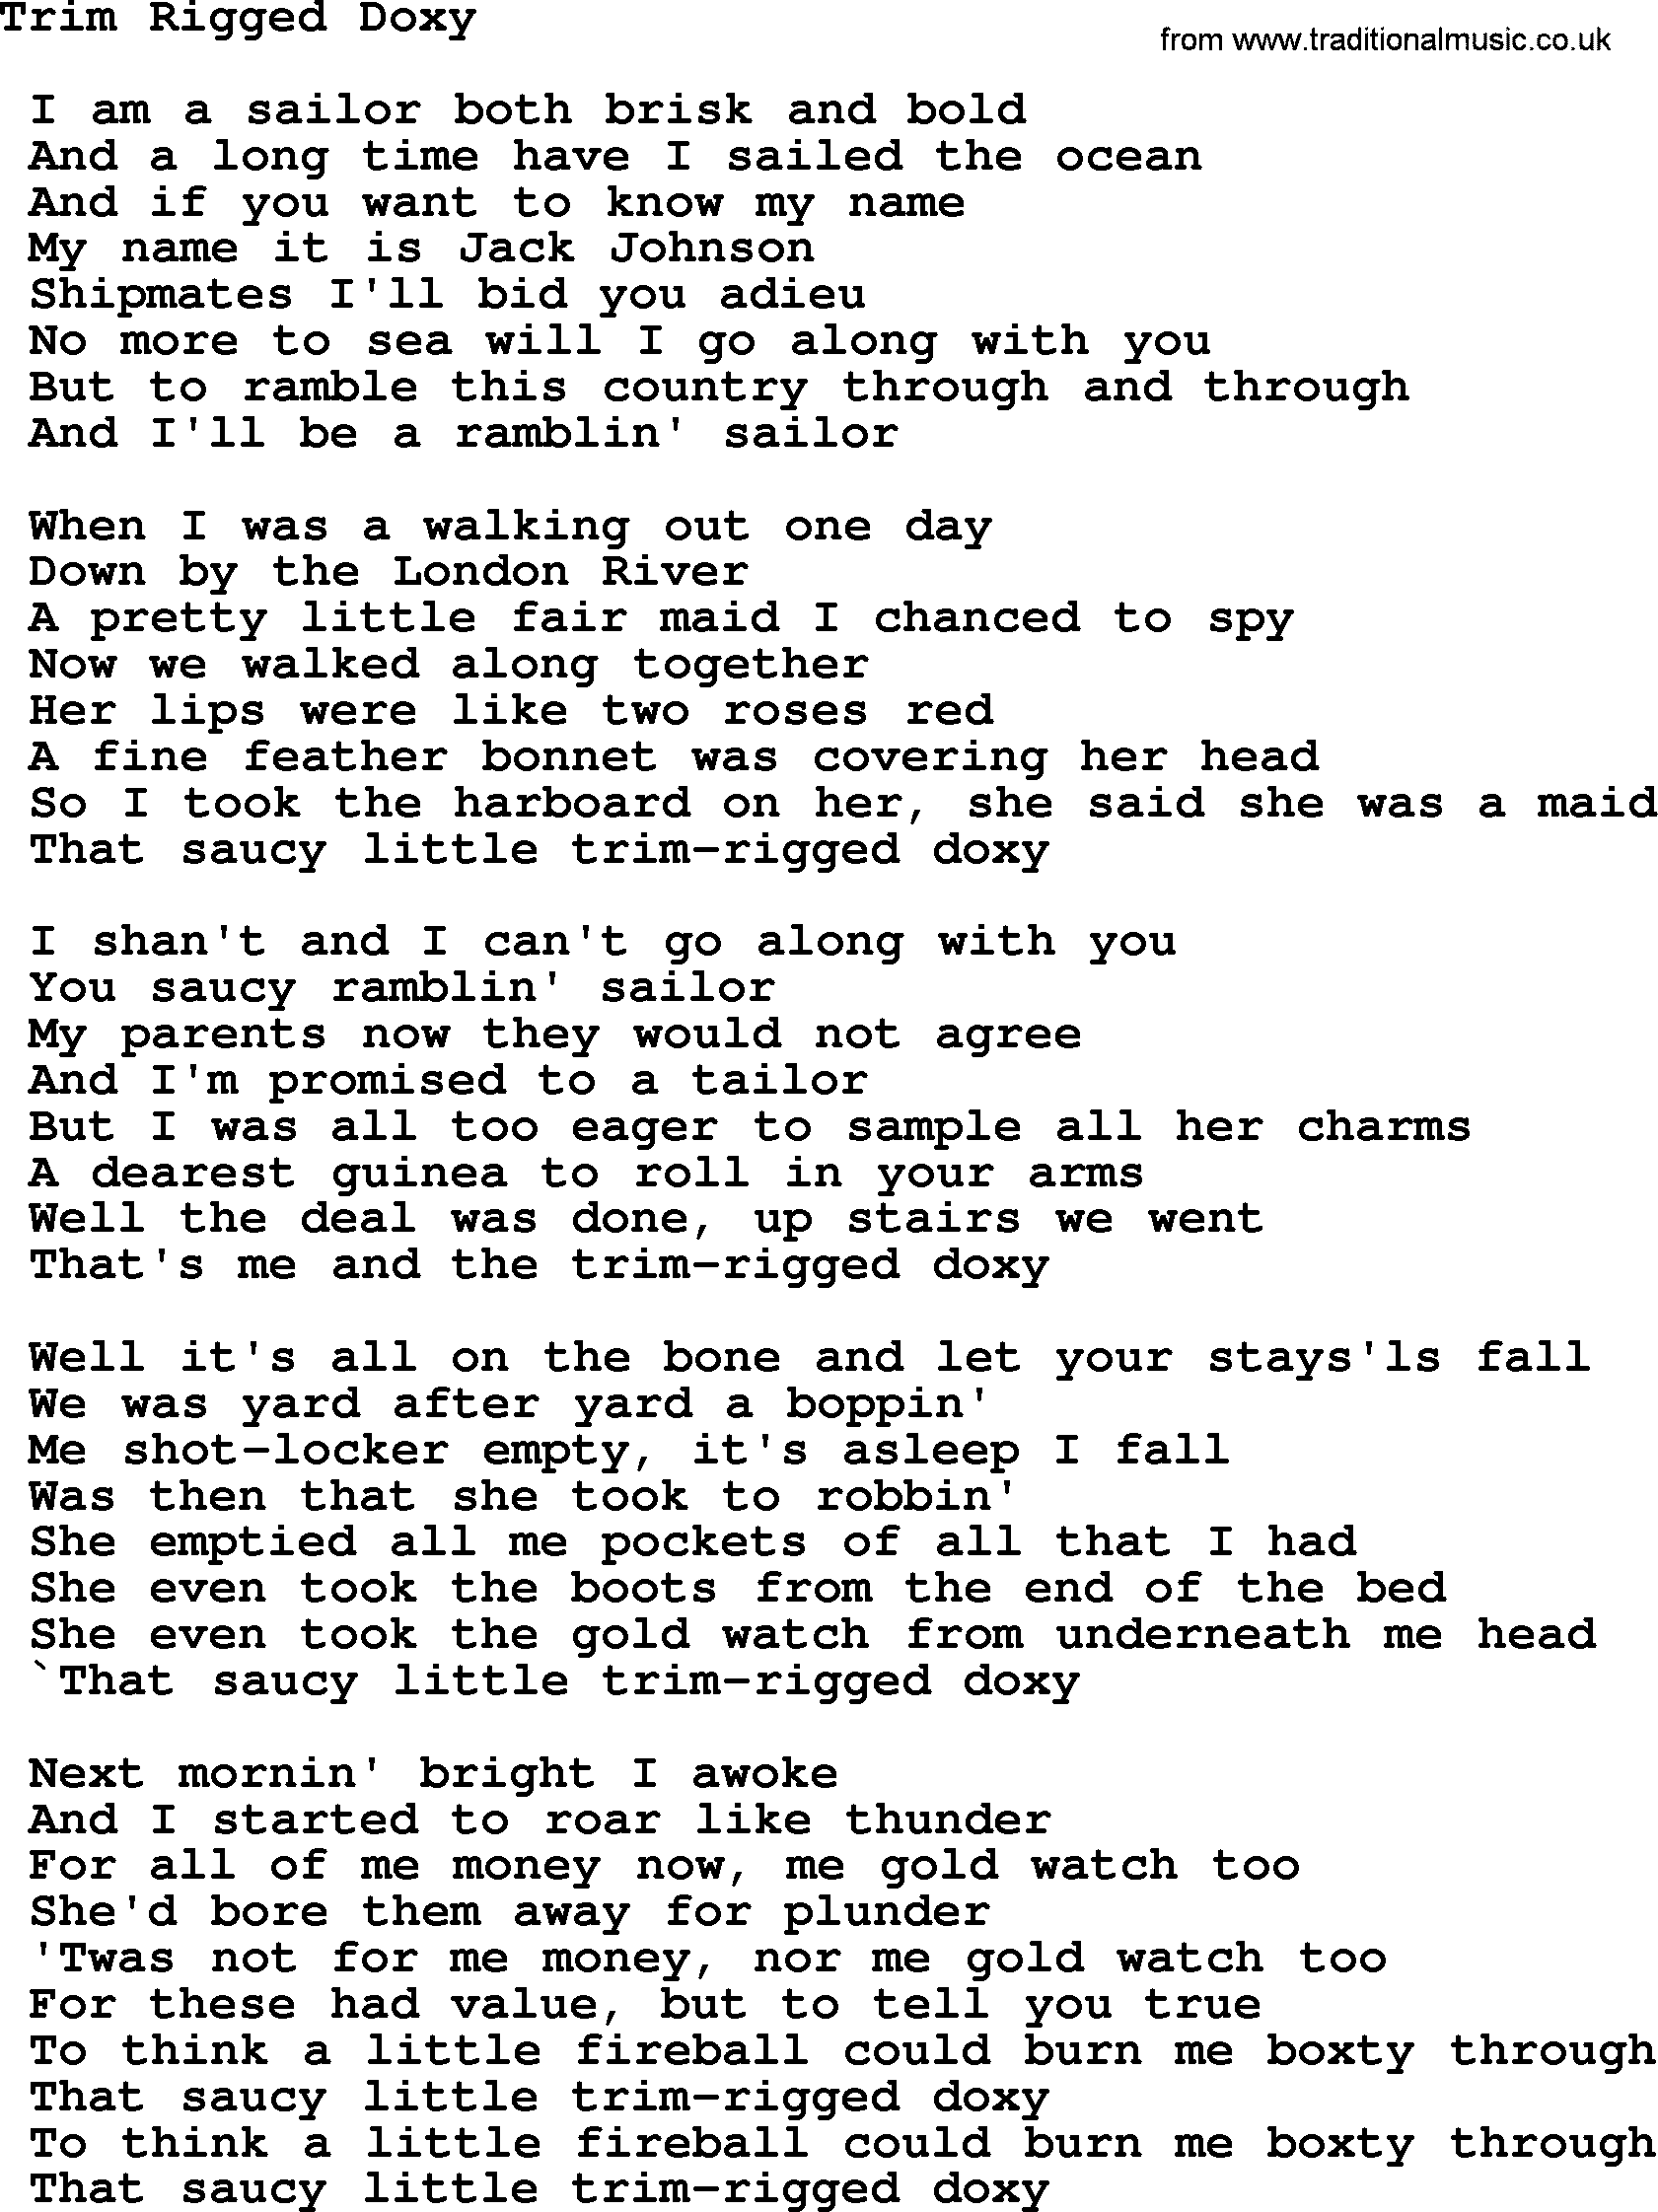 Sea Song or Shantie: Trim Rigged Doxy, lyrics